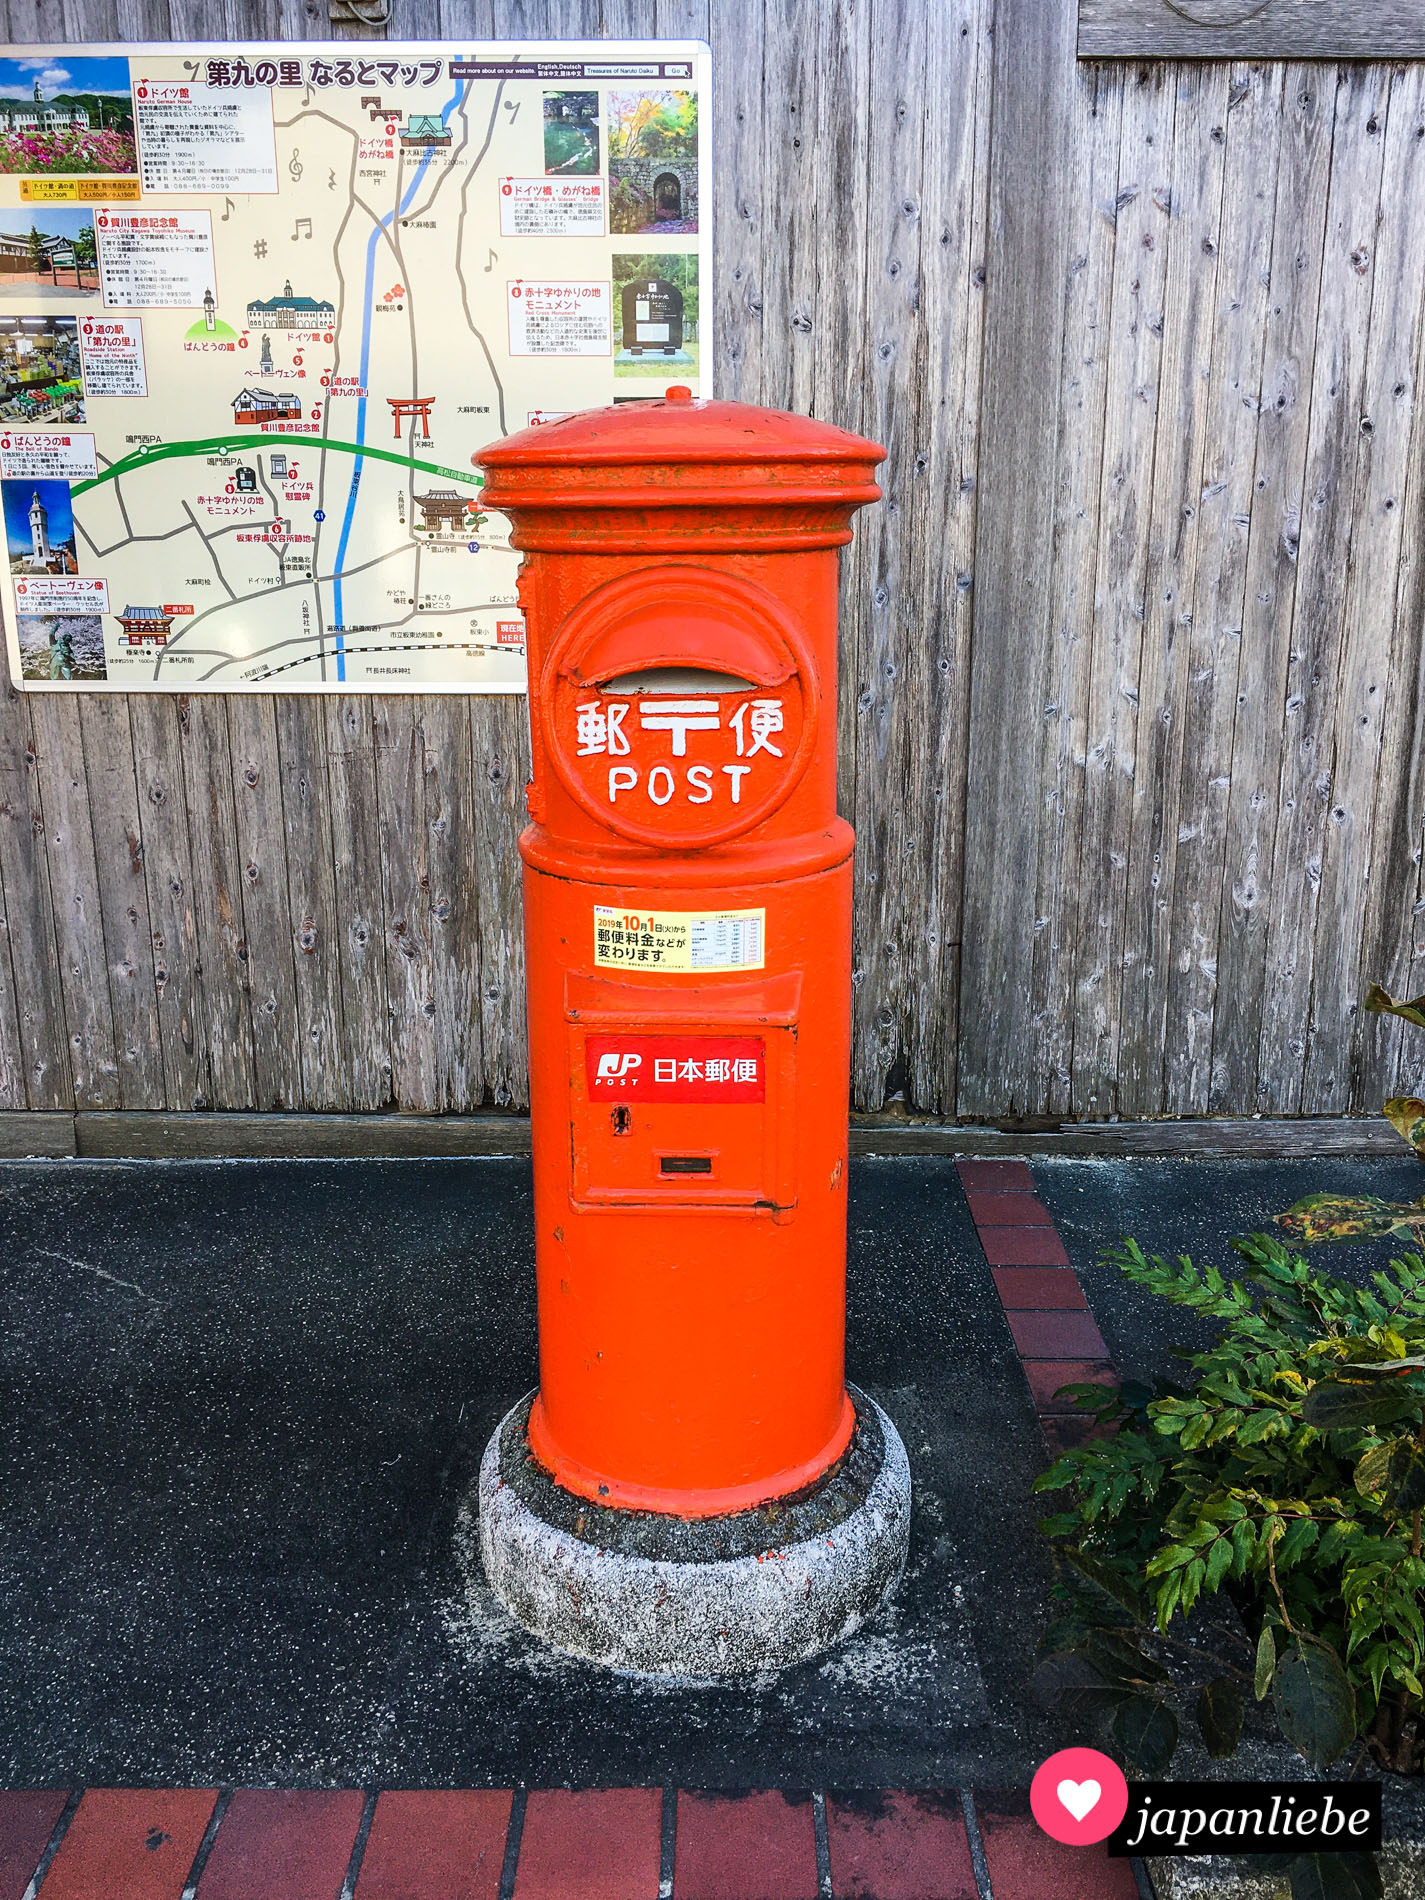 Ein klassisch, japanischer Briefkasten in rot und rund am Bahnhof von Bandō.